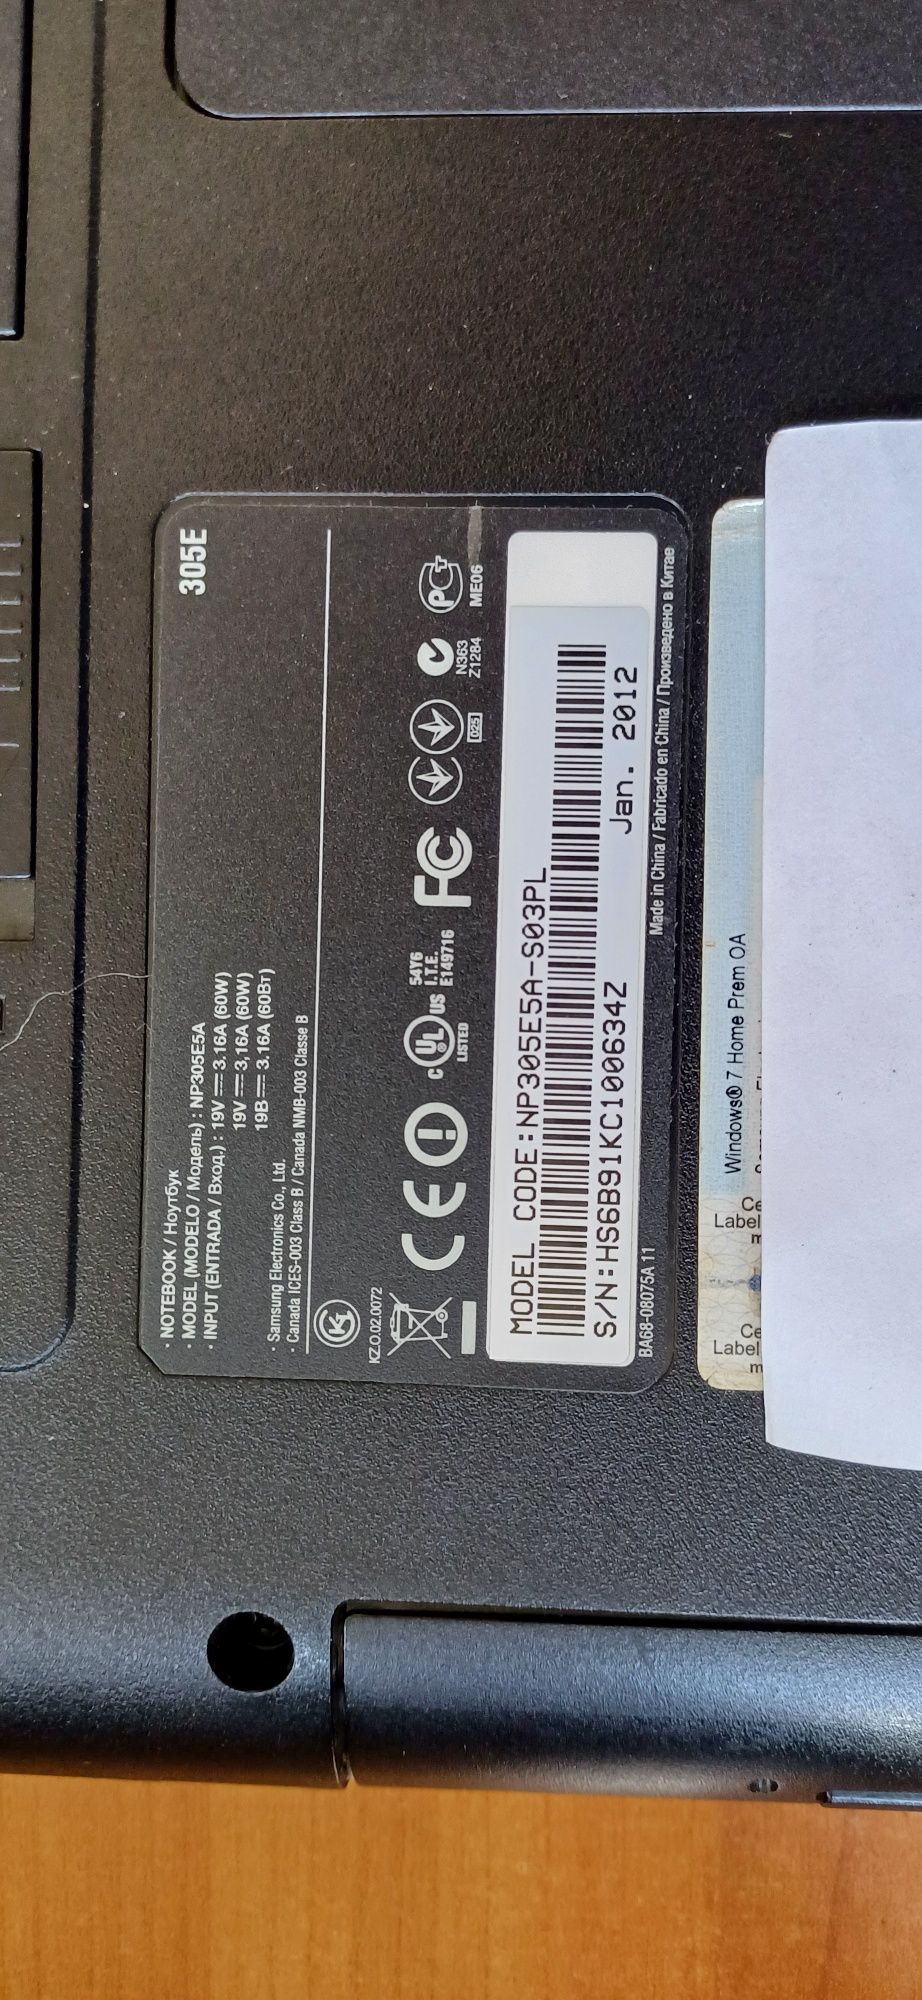 Samsung NP305E5A-S03PL Linux MX.